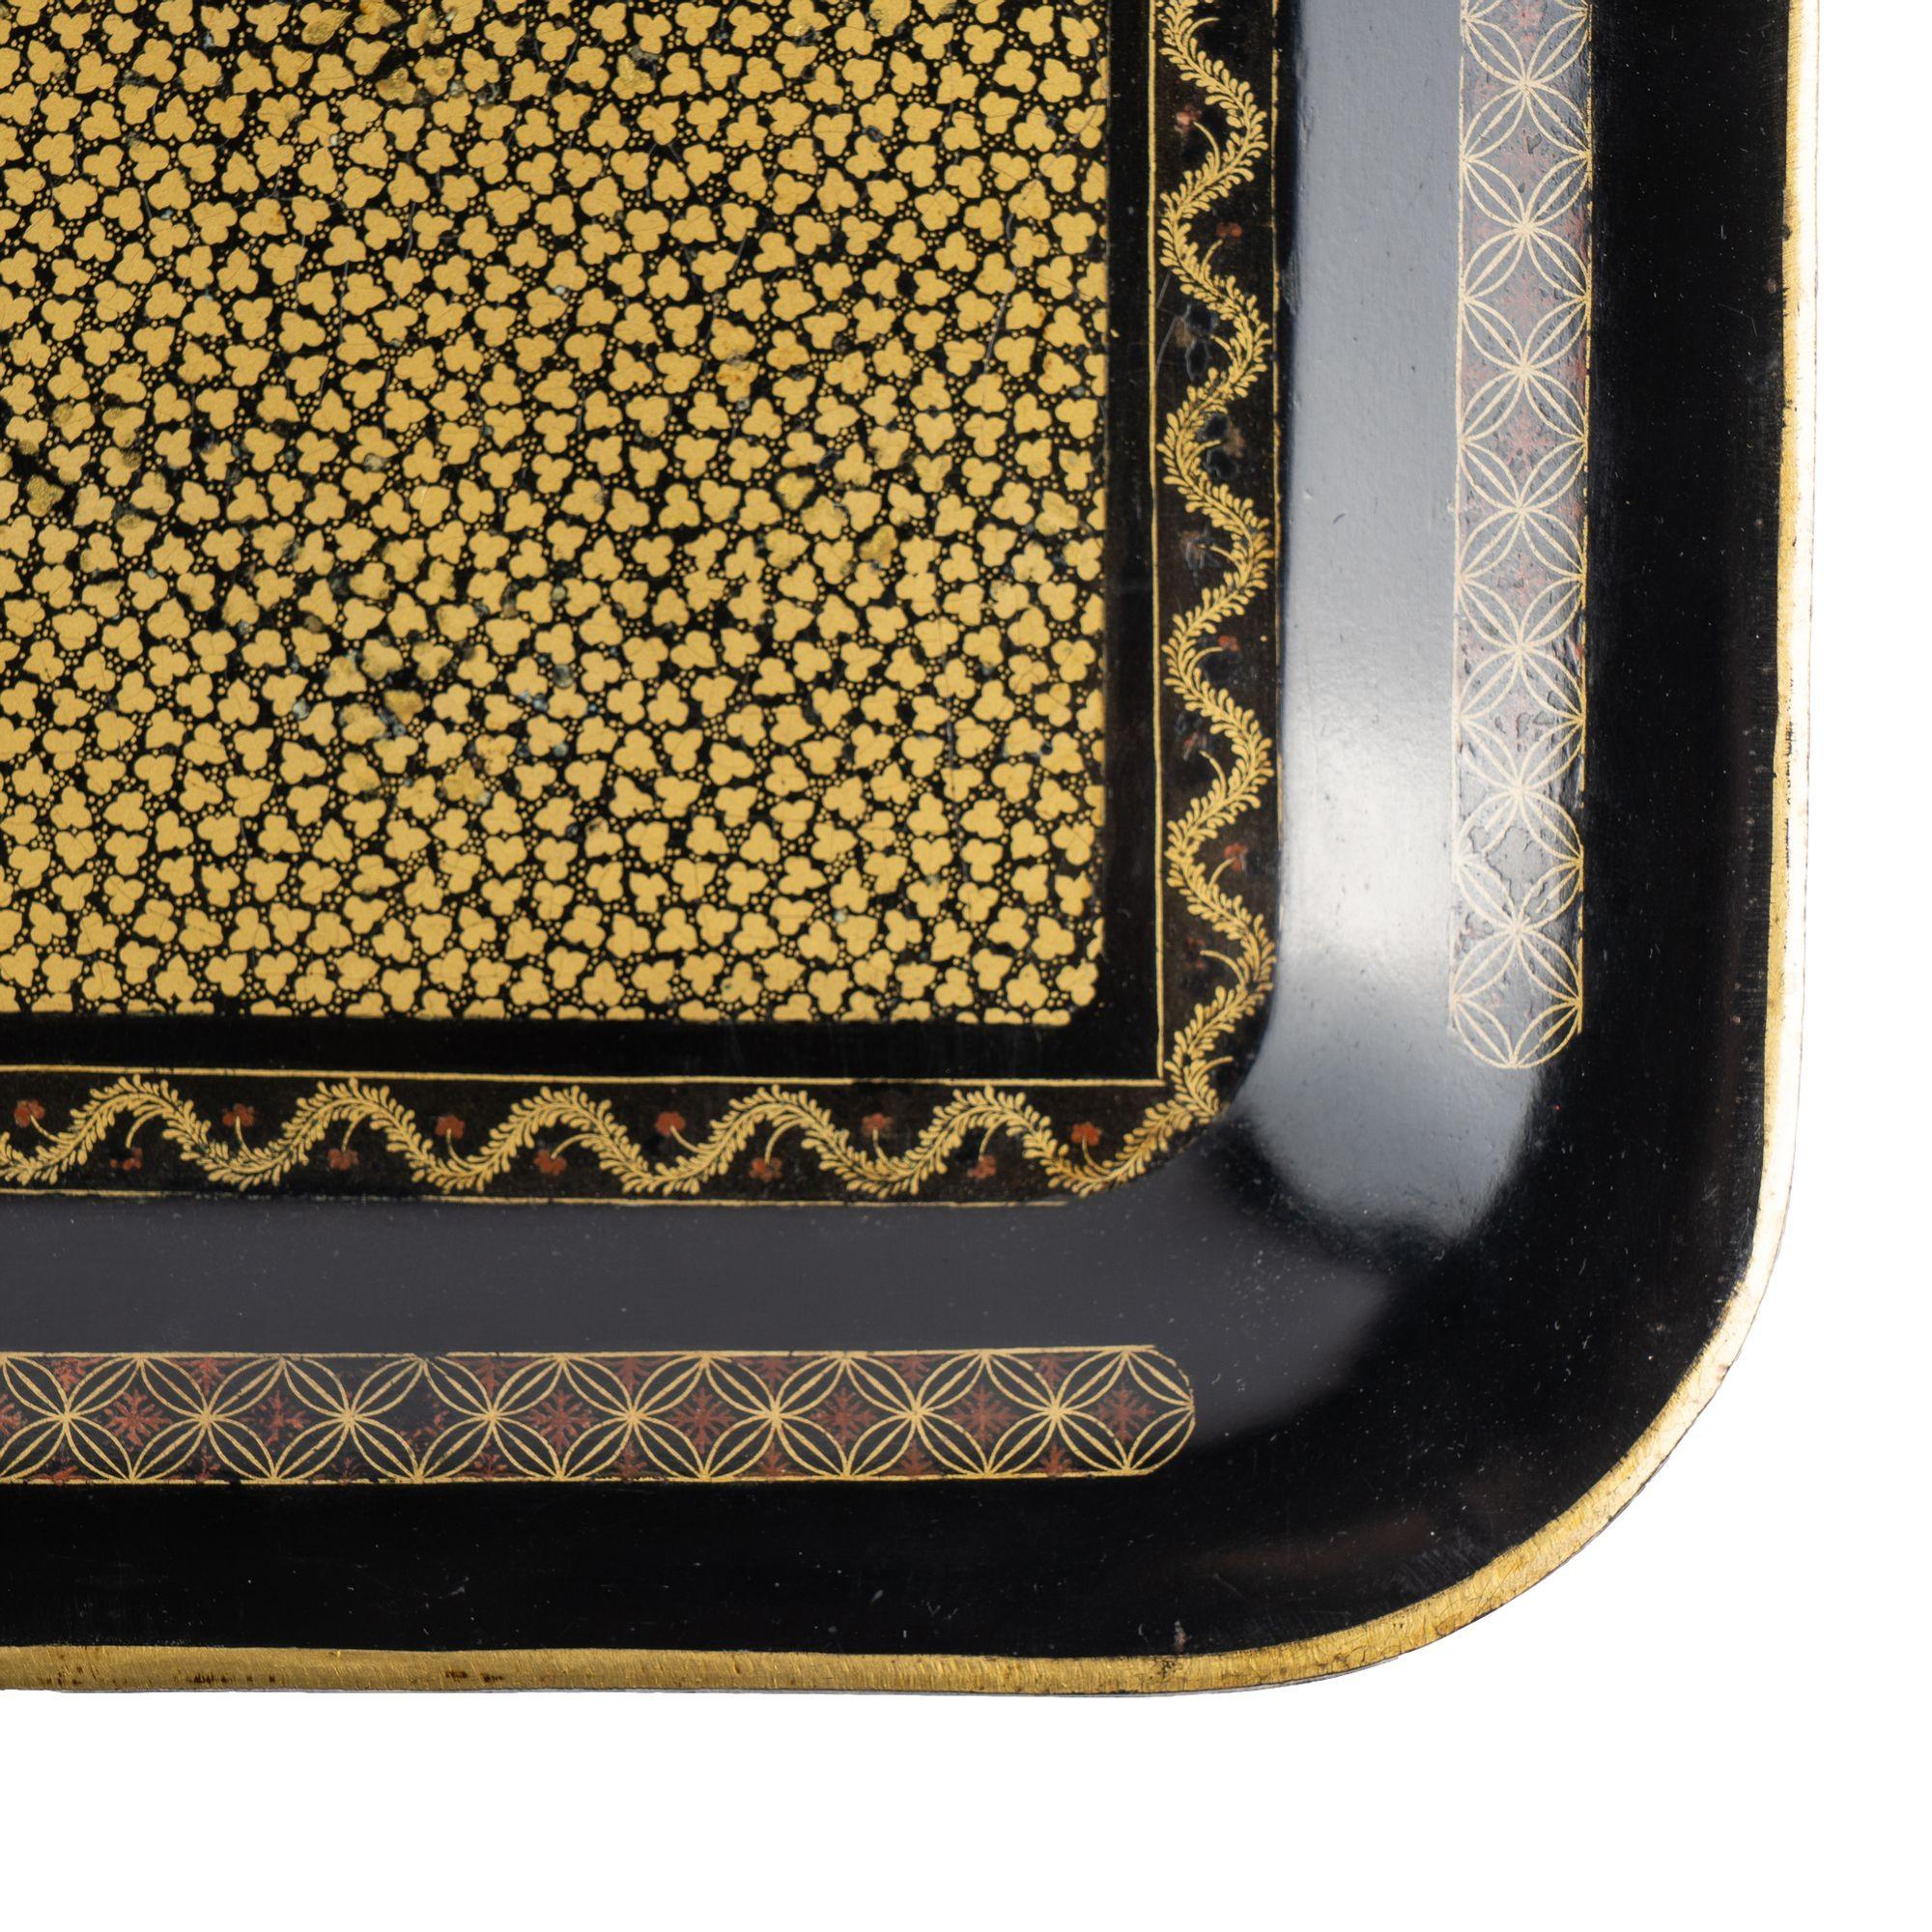 Stark gemustertes Teetablett aus chinesischem Tole. Der Boden des Tabletts wird von einem vergoldeten Feldmuster dominiert, das von einem wellenförmigen Banddekor eingefasst ist und an allen vier Seiten von einem geometrischen Muster flankiert wird.